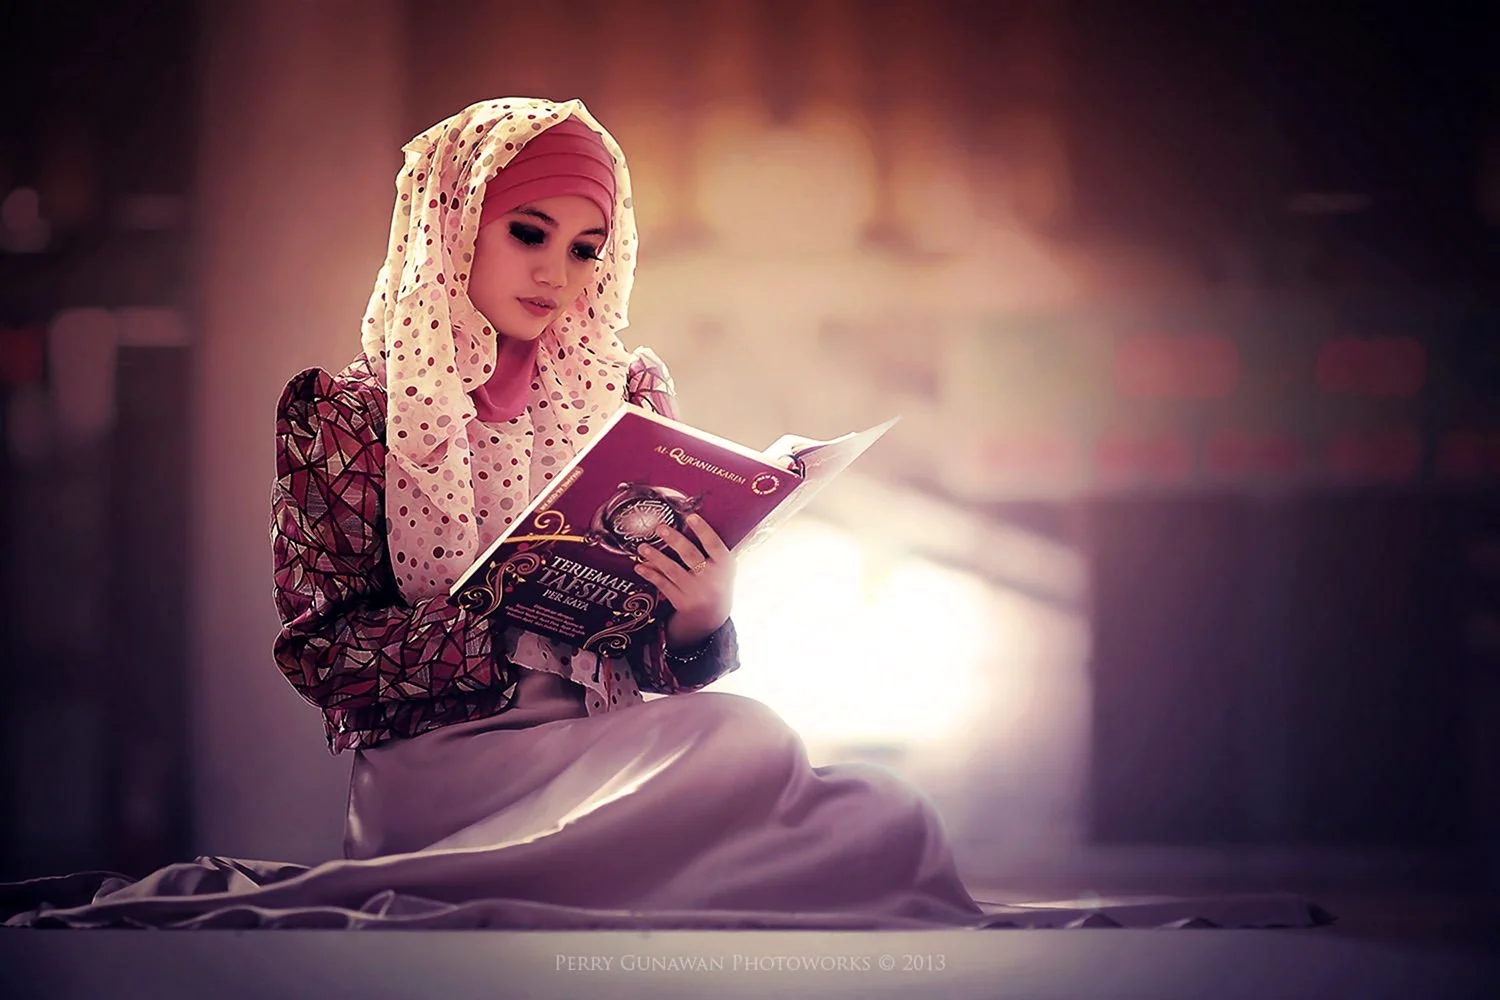 Девушка с Кораном